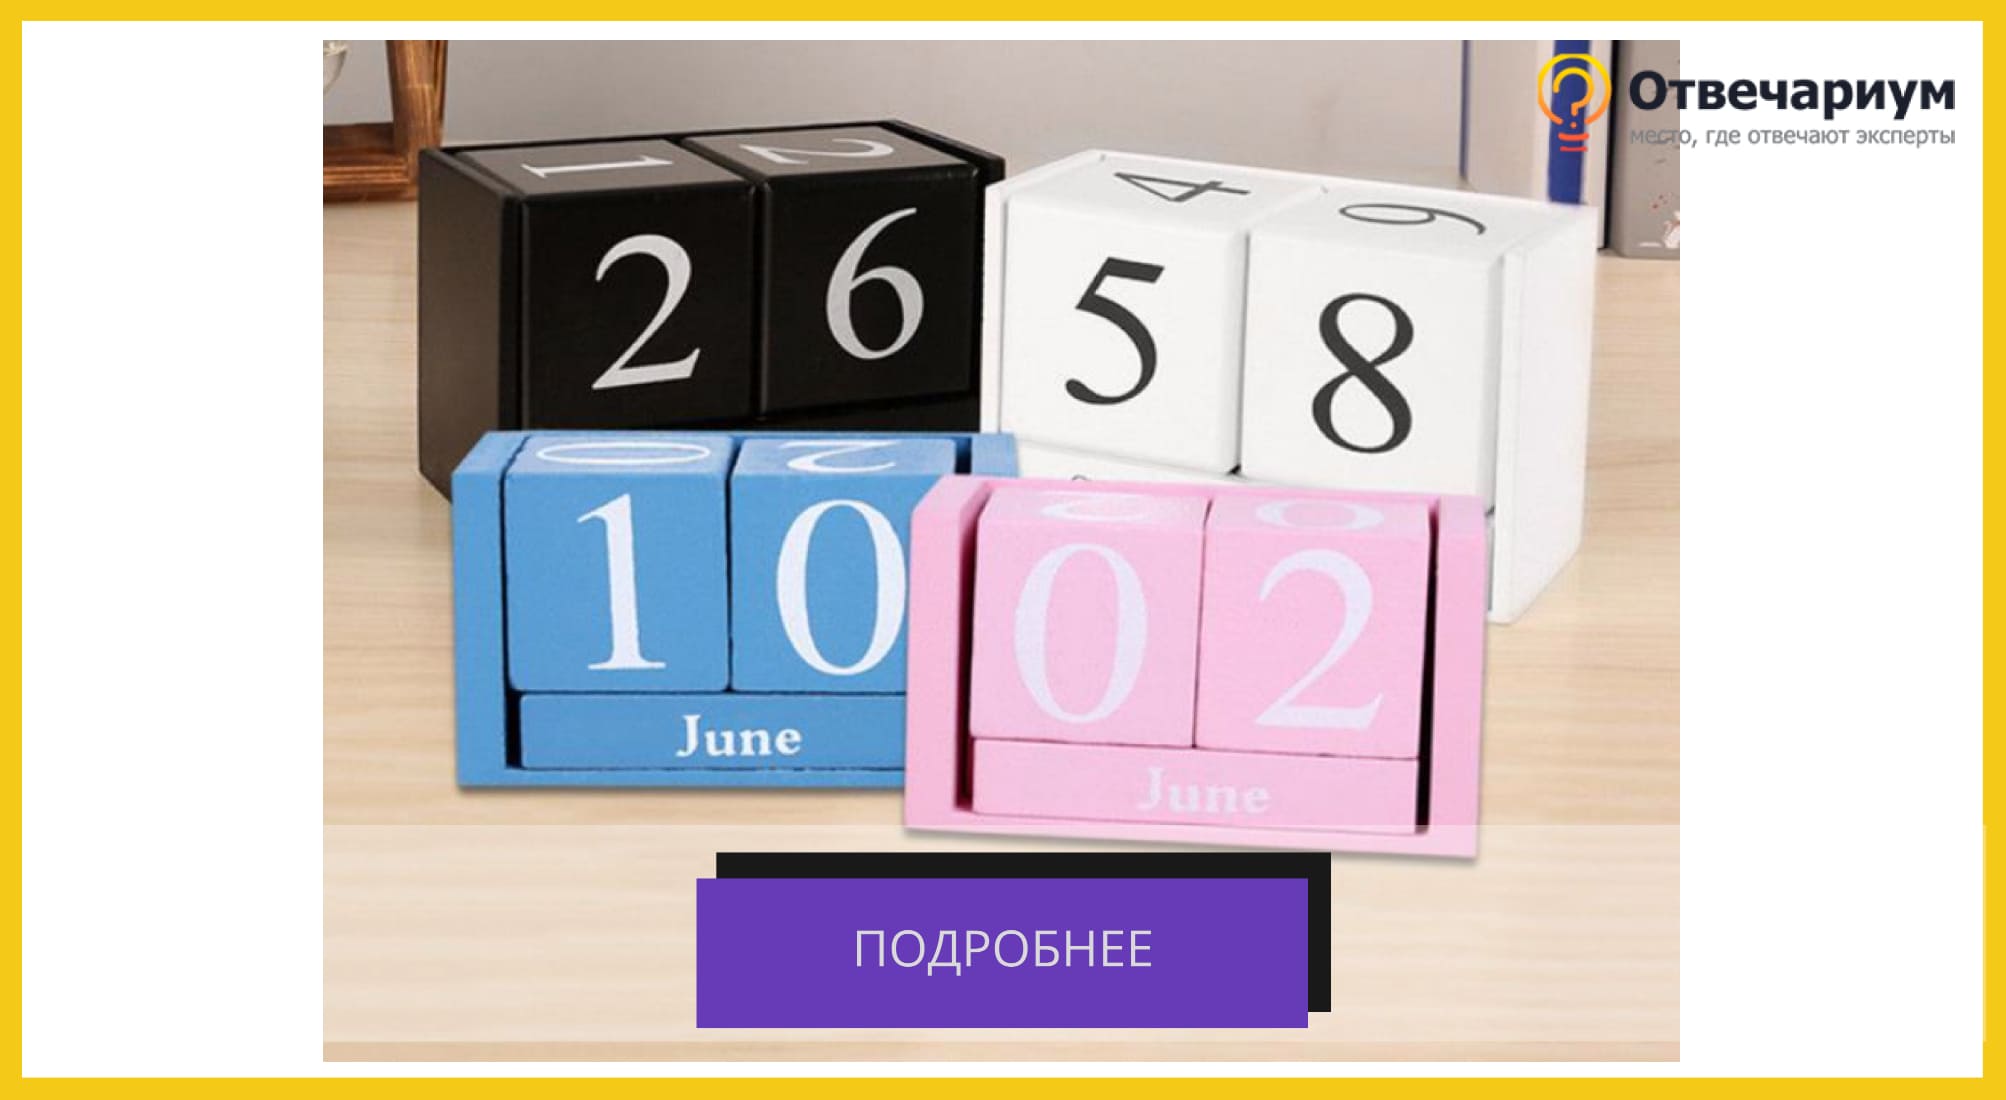 Четыре разных цвета вечных календарей состоящих из двух цифр и месяца: черный, белый, синий и розовый.